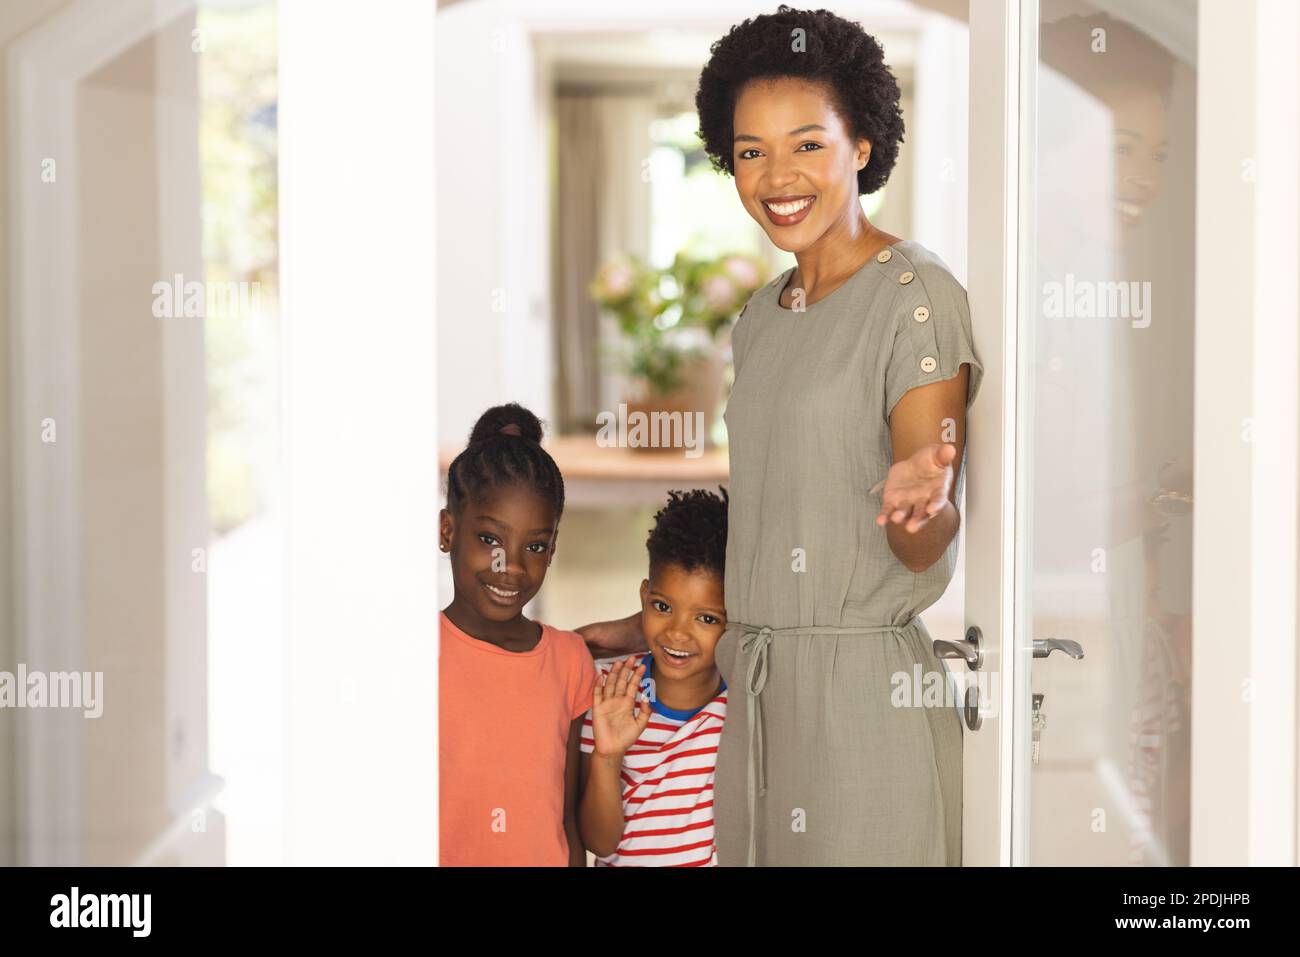 Retrato de madre afroamericana feliz y niños que abren la puerta e invitan Foto de stock